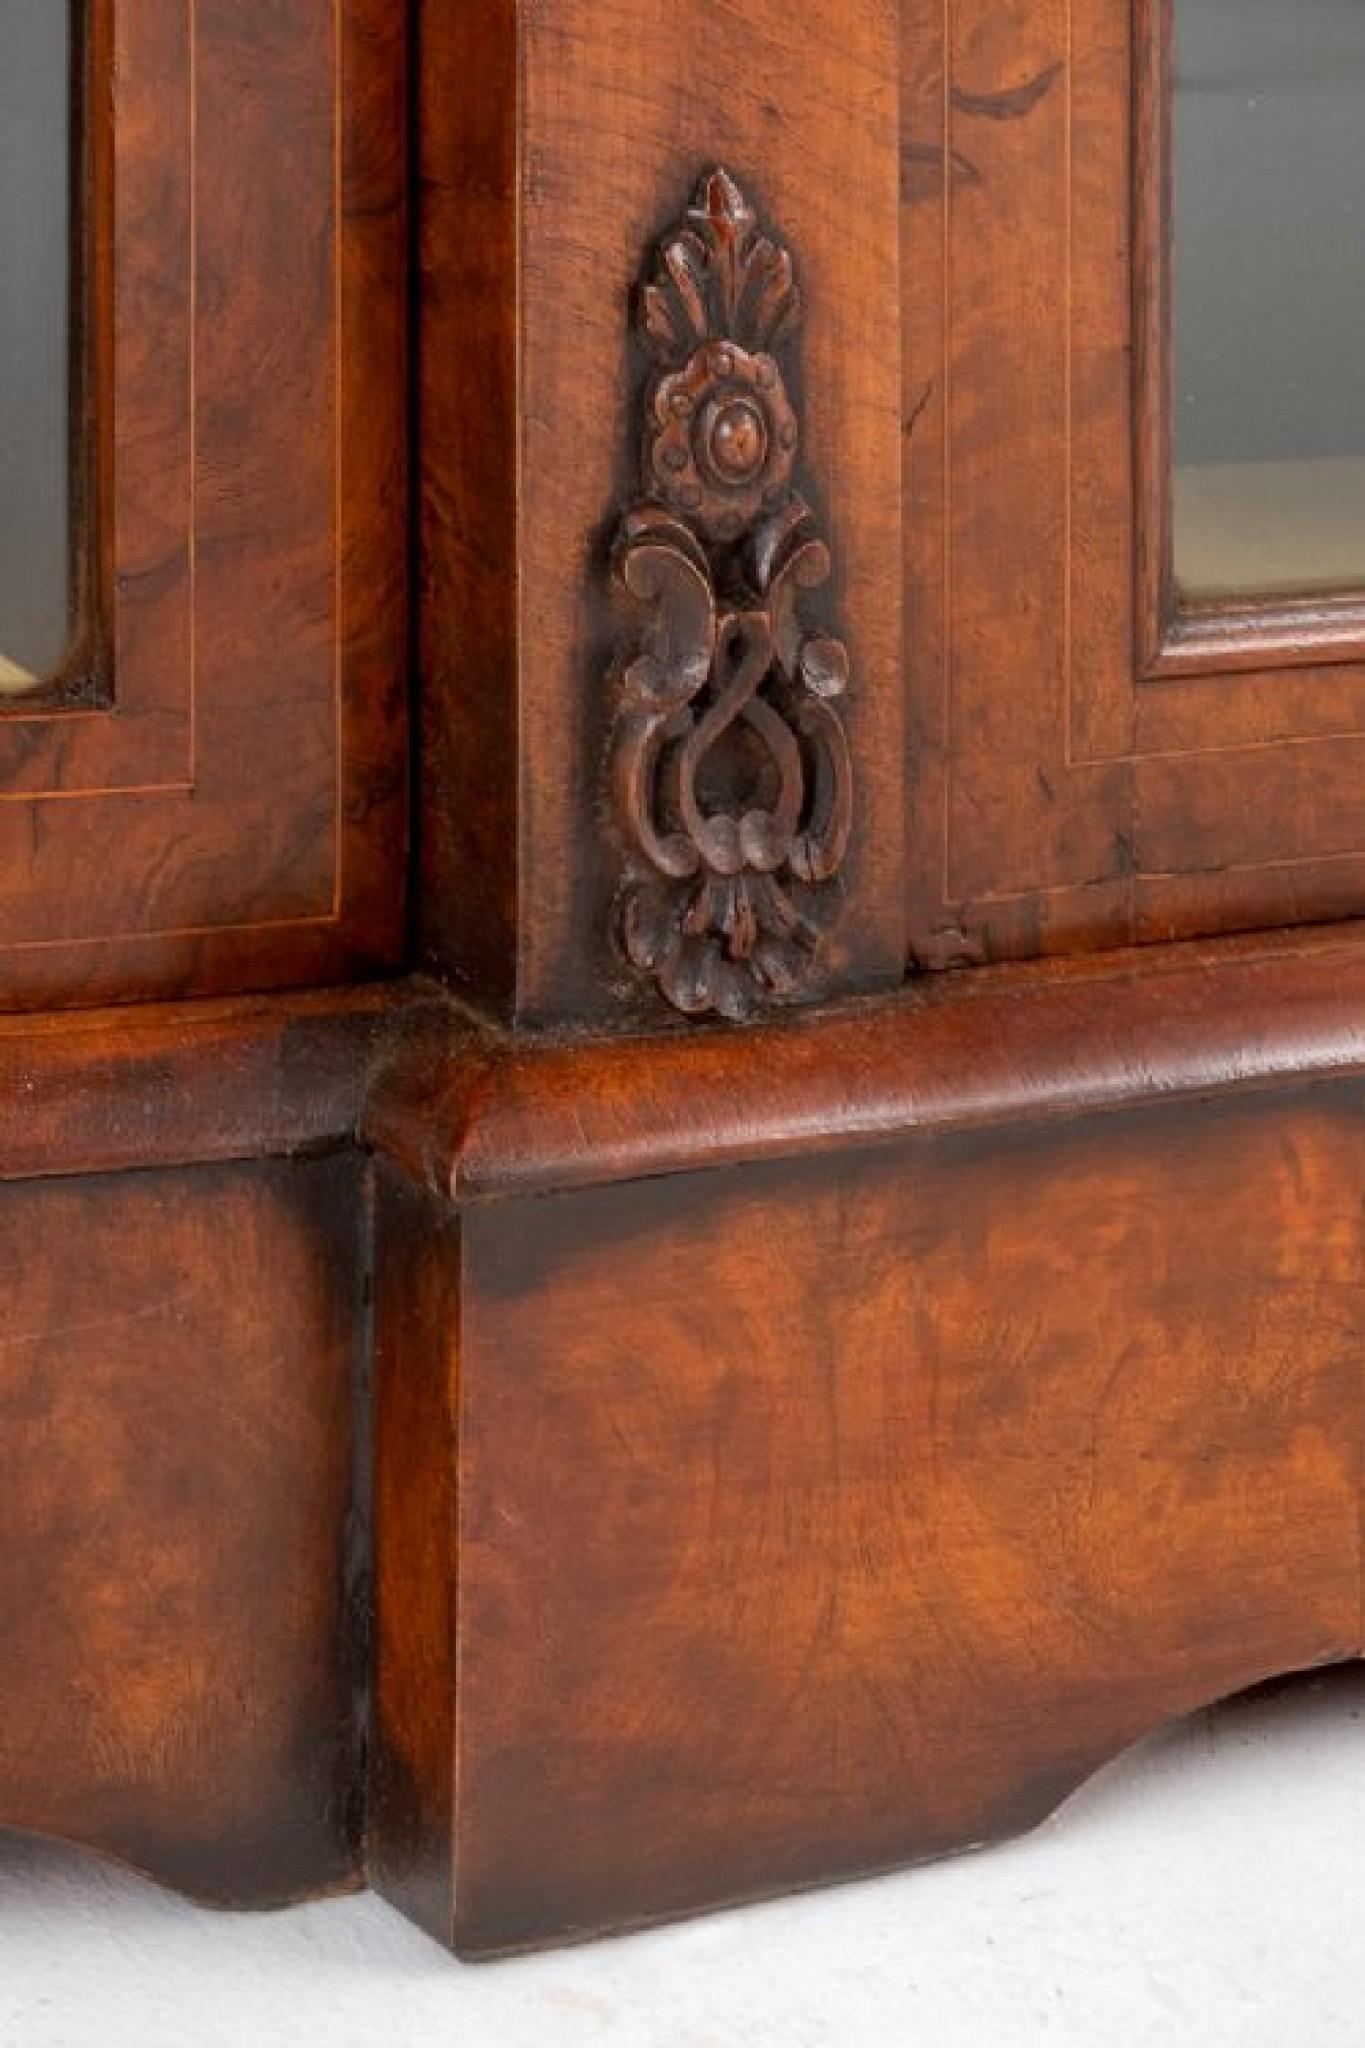 Viktorianische Kredenz aus Wurzelnussholz.
Auf einem Sockel stehend.
CIRCA 1860
Die zentrale verglaste Tür wird von Säulen mit geschnitzten Verzierungen flankiert.
Die Credenza verfügt über Türen mit Bogenglasabschlüssen.
Mit Intarsienverzierung auf